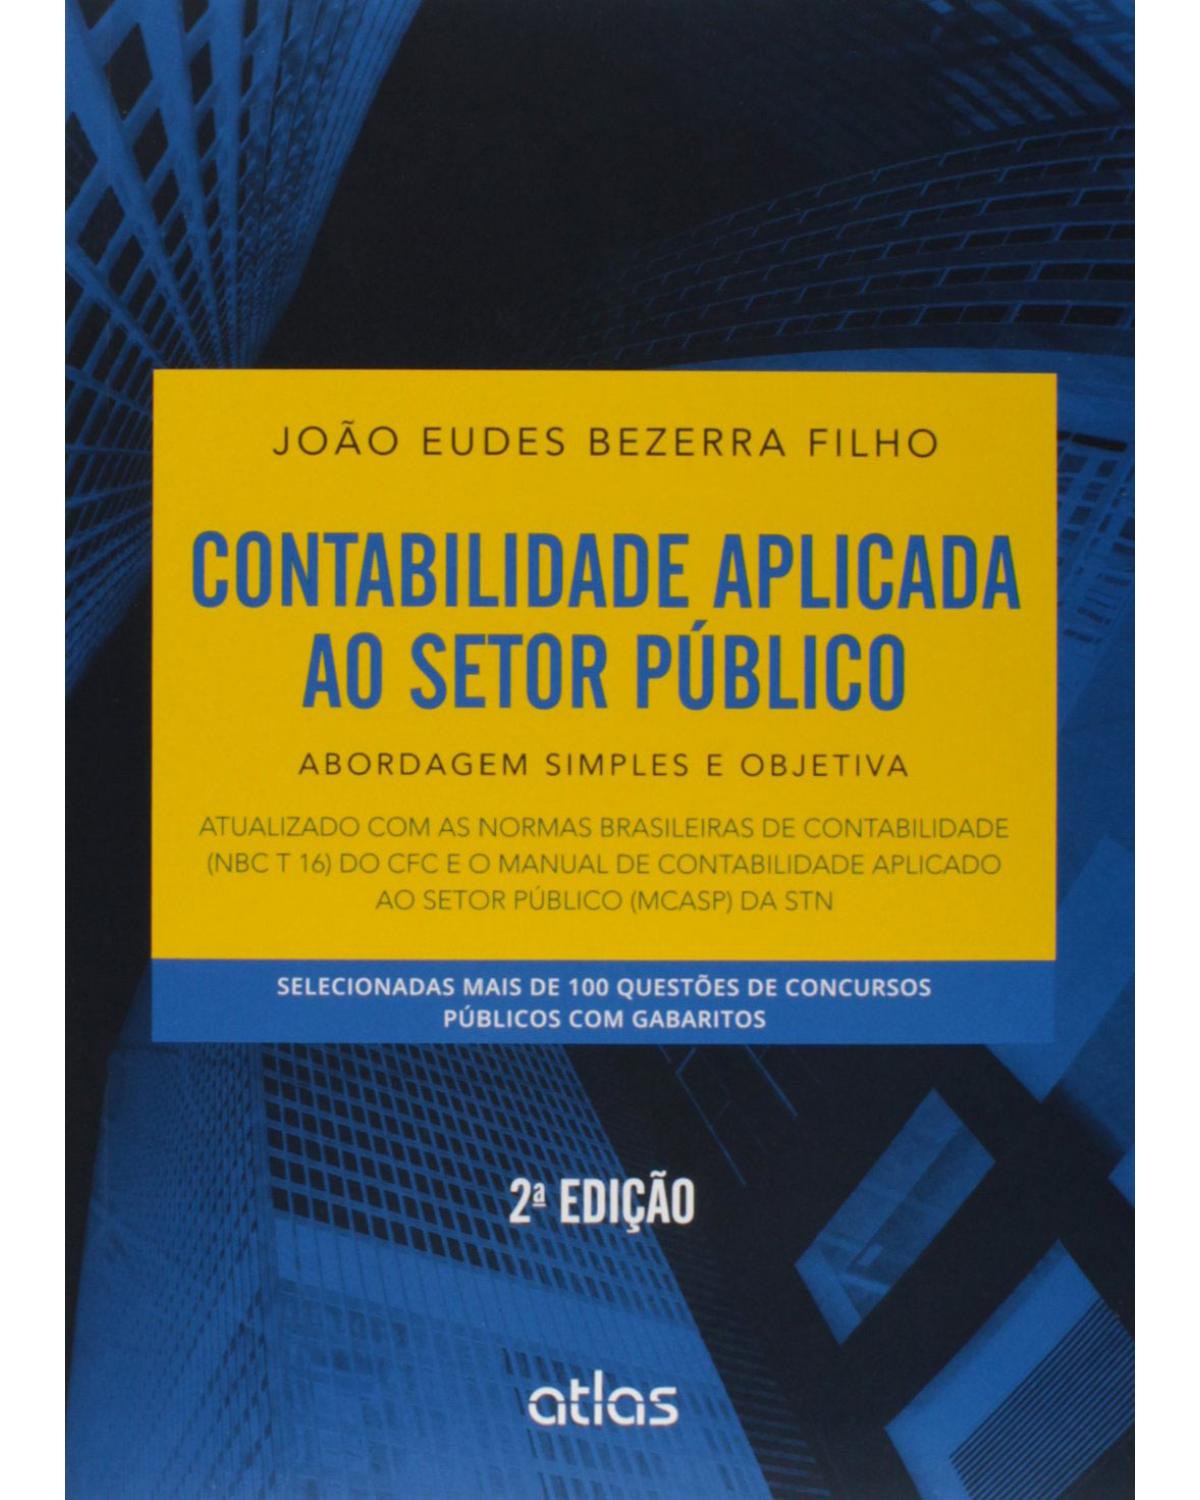 Contabilidade aplicada ao setor público - Abordagem simples e objetiva - 2ª Edição | 2015